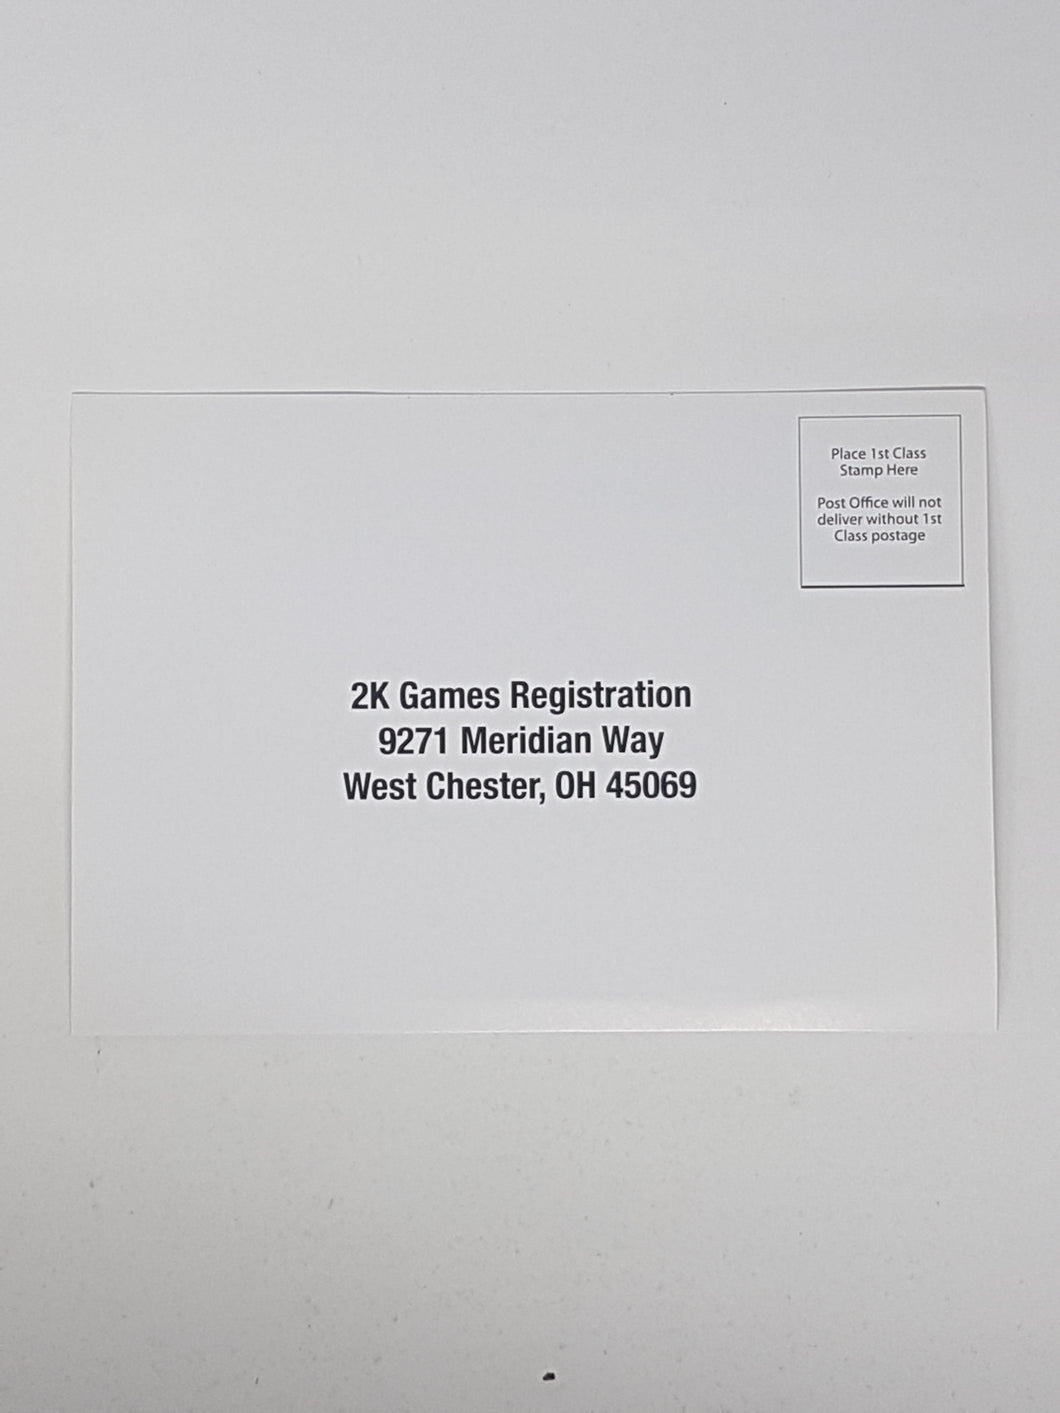 2K Games Registration Card [Insert] - Sony Playstation 2 | PS2